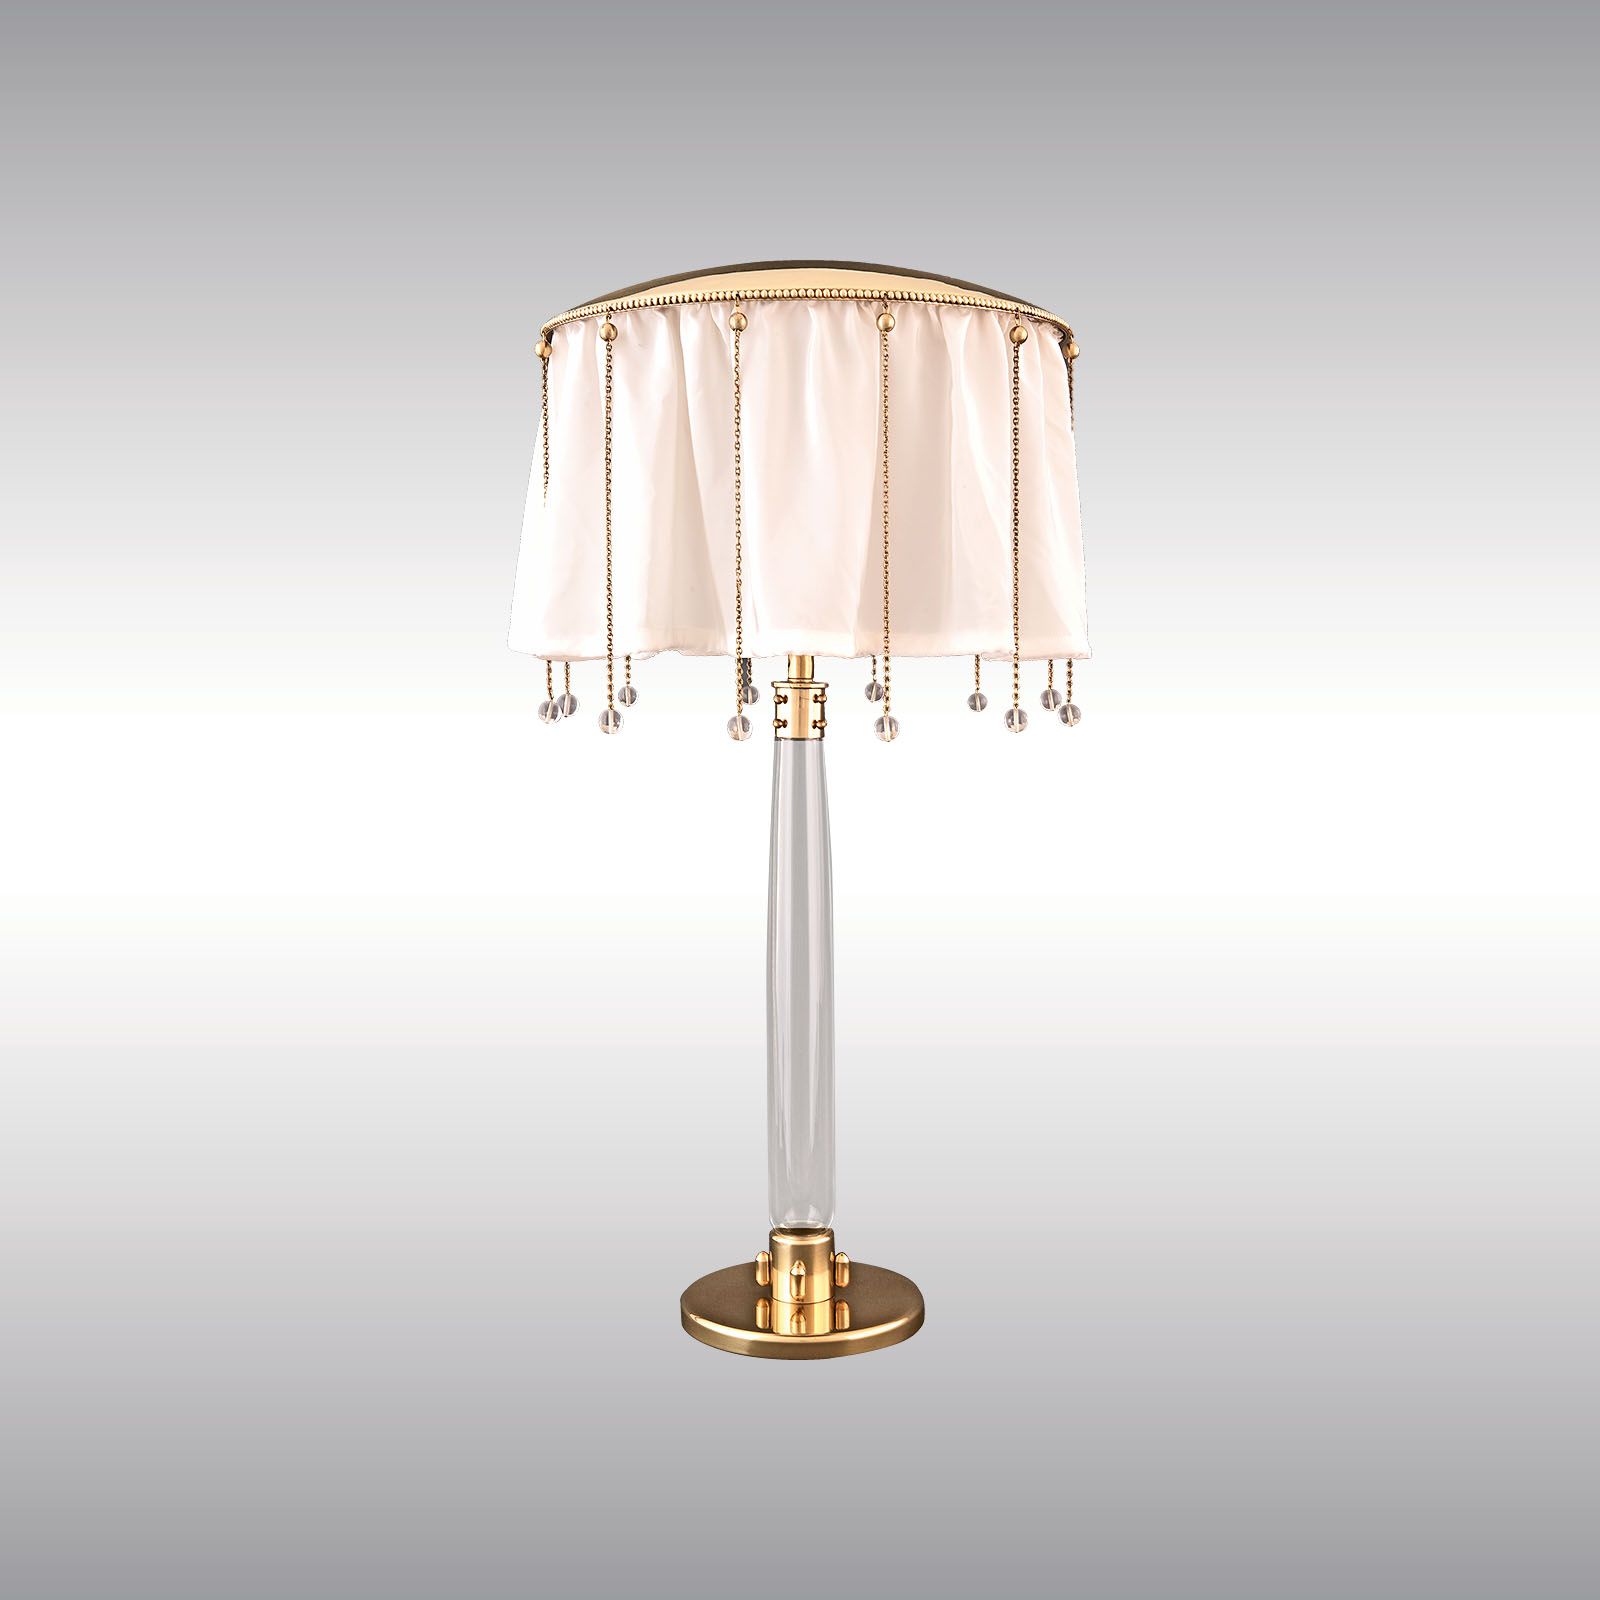 WOKA LAMPS VIENNA - OrderNr.: 20512|WW-S - Design: Wiener Werkstaette